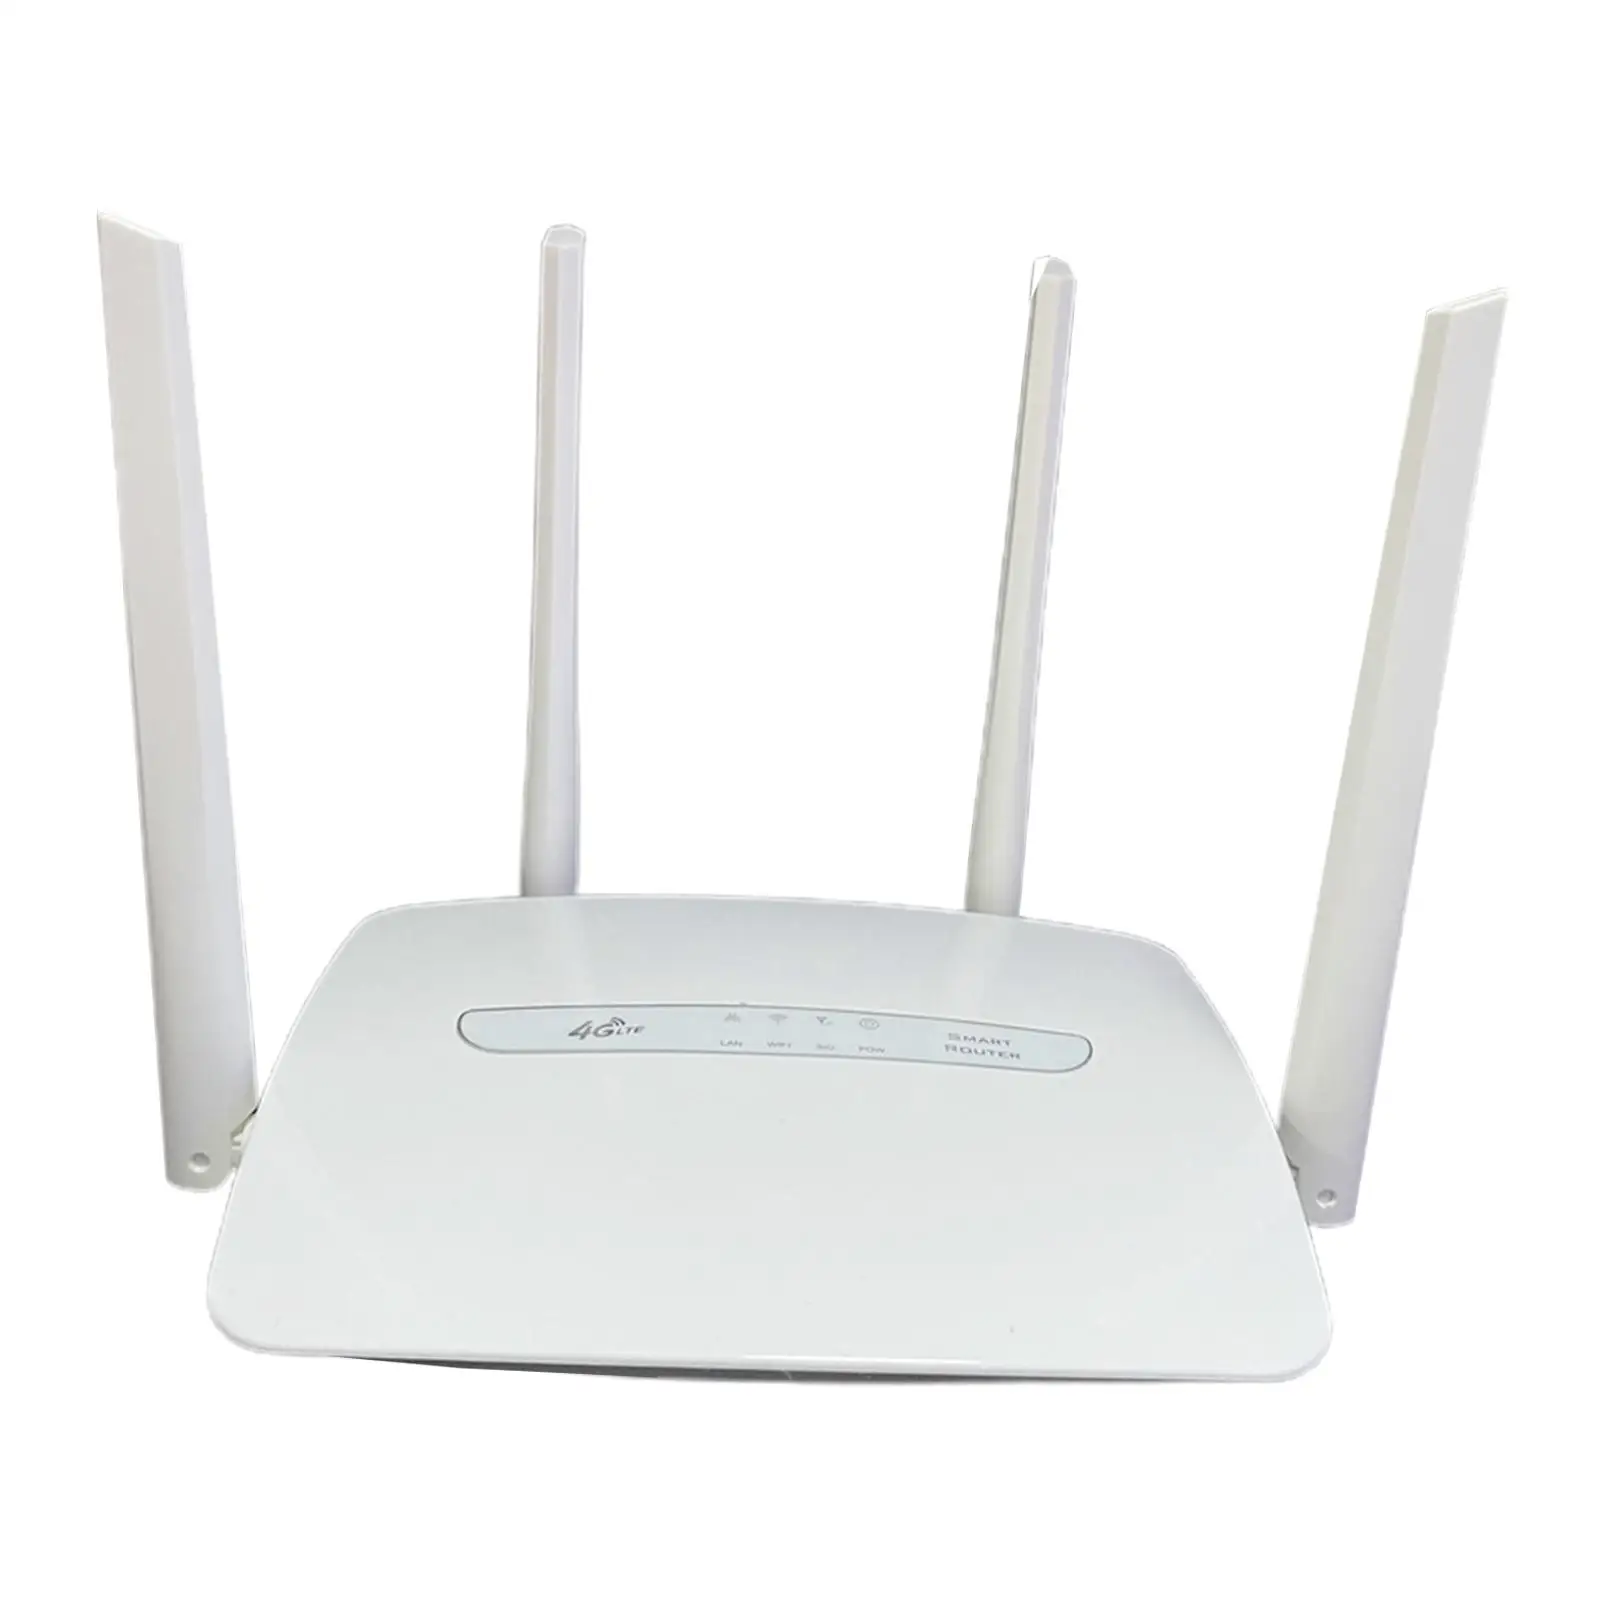 4G LTE WiFi Wireless Router 4 Hotspoturi Mobile pentru acasă1